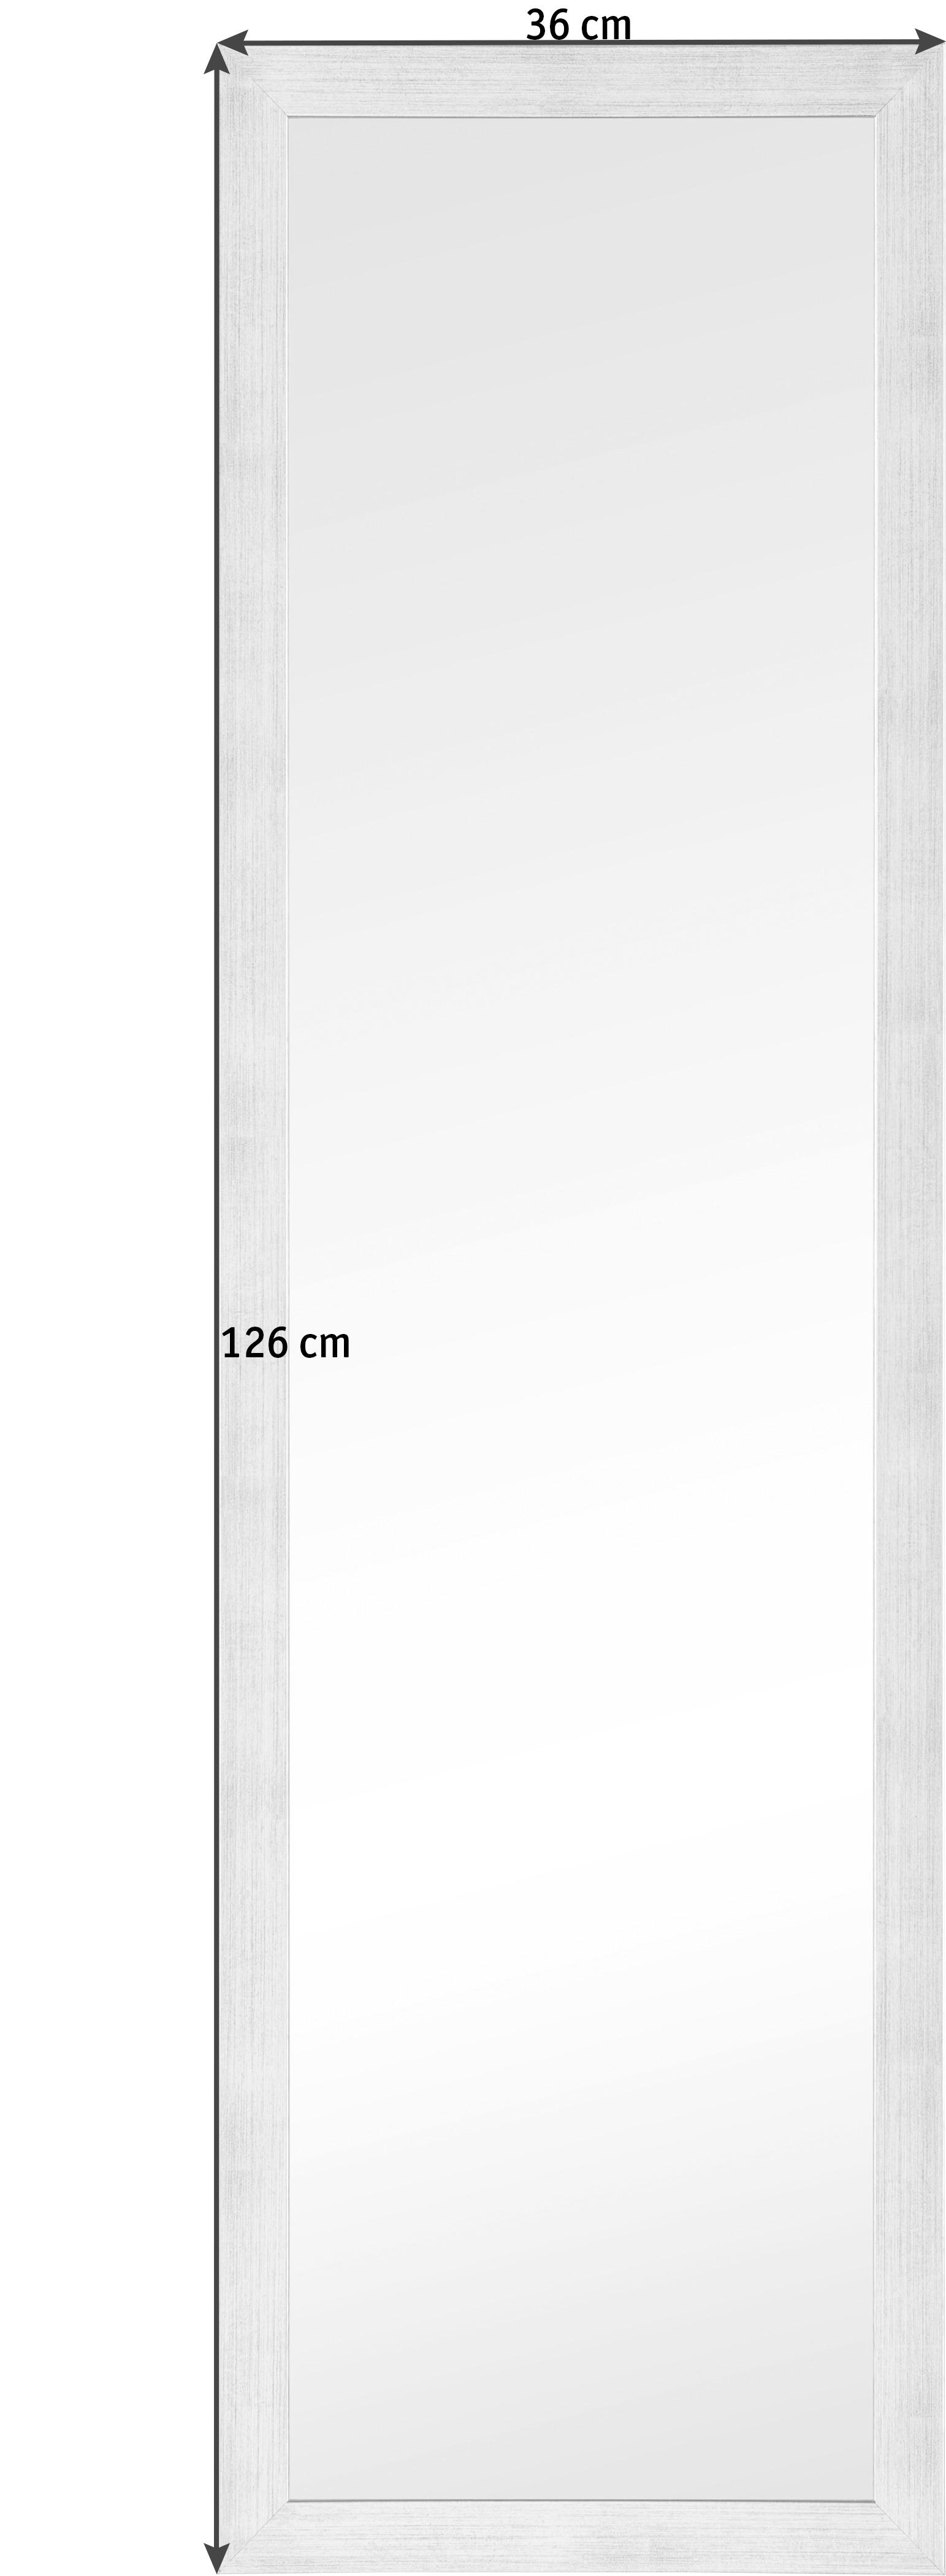 NÁSTENNÉ ZRKADLO 36/126 cm - strieborná, Design, kompozitné drevo/sklo (36/126cm)